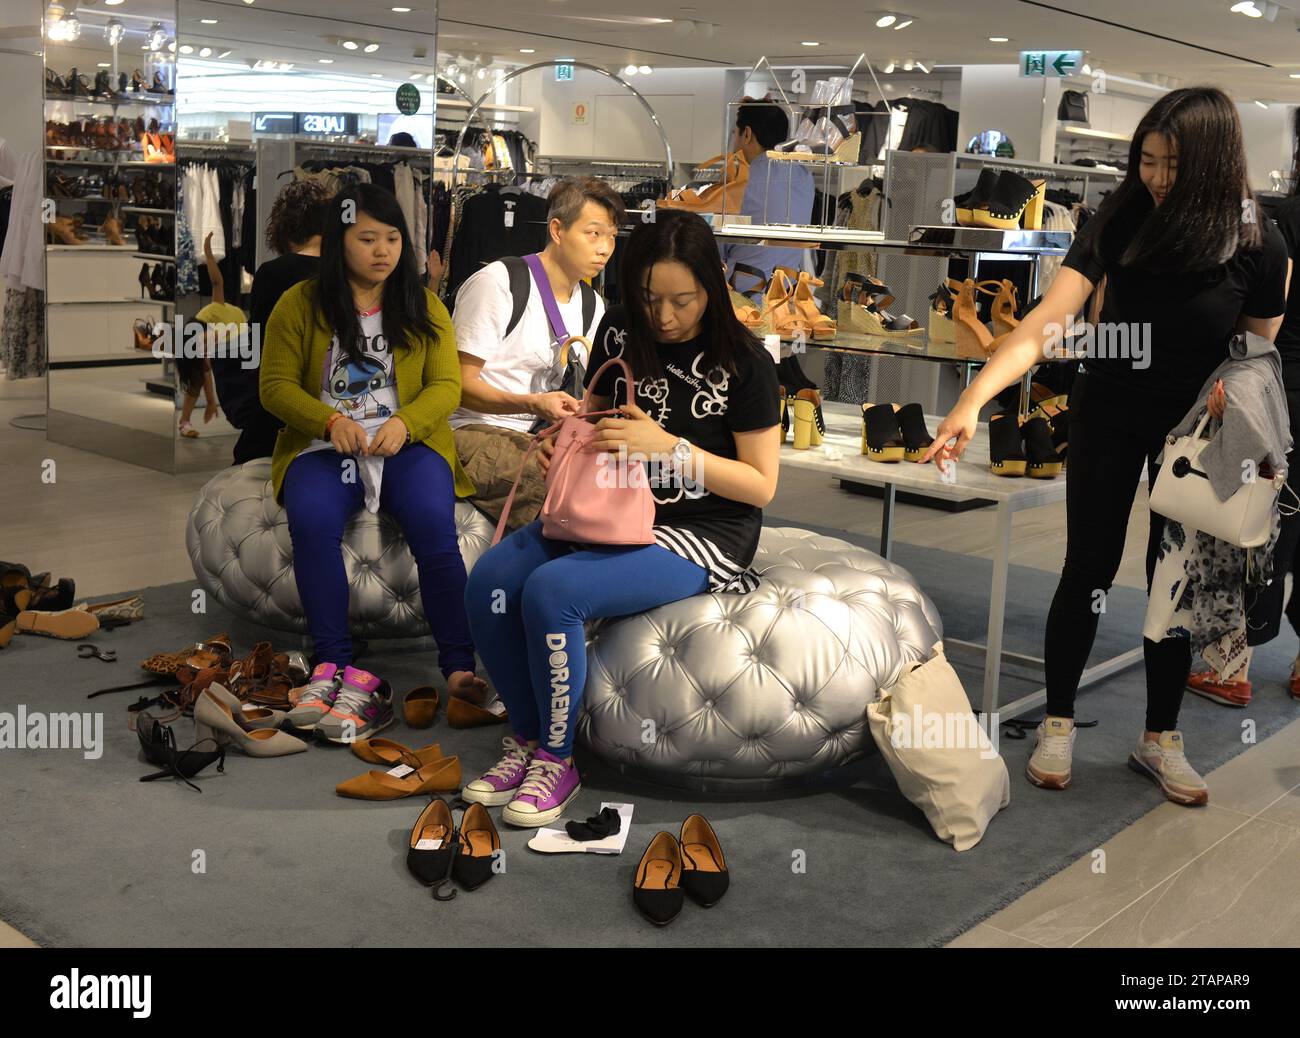 HONG KONG - APR 23, 2016: People in shoe store in Hong Kong. Footwear shop in Hong Kong. Stock Photo